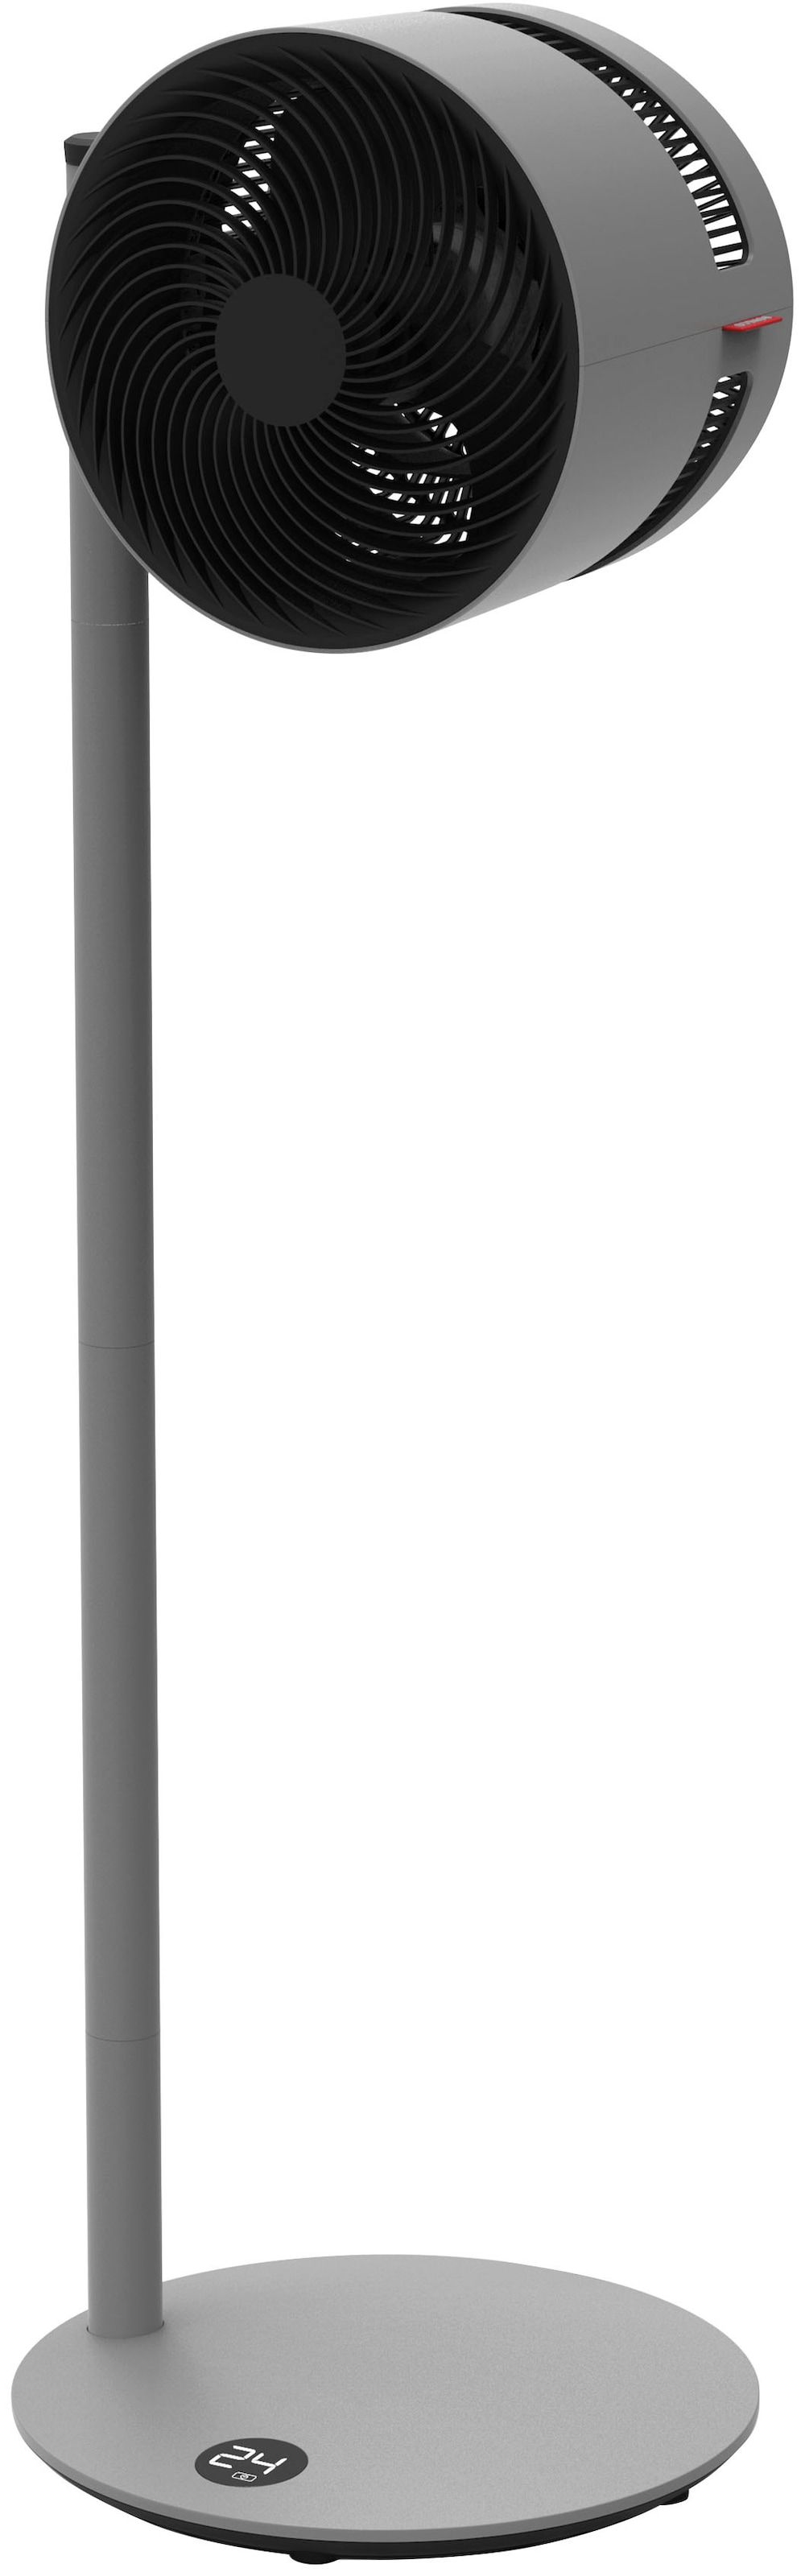 Boneco Standventilator »Air Shower F235«, 37,5 cm Durchmesser, 22 W